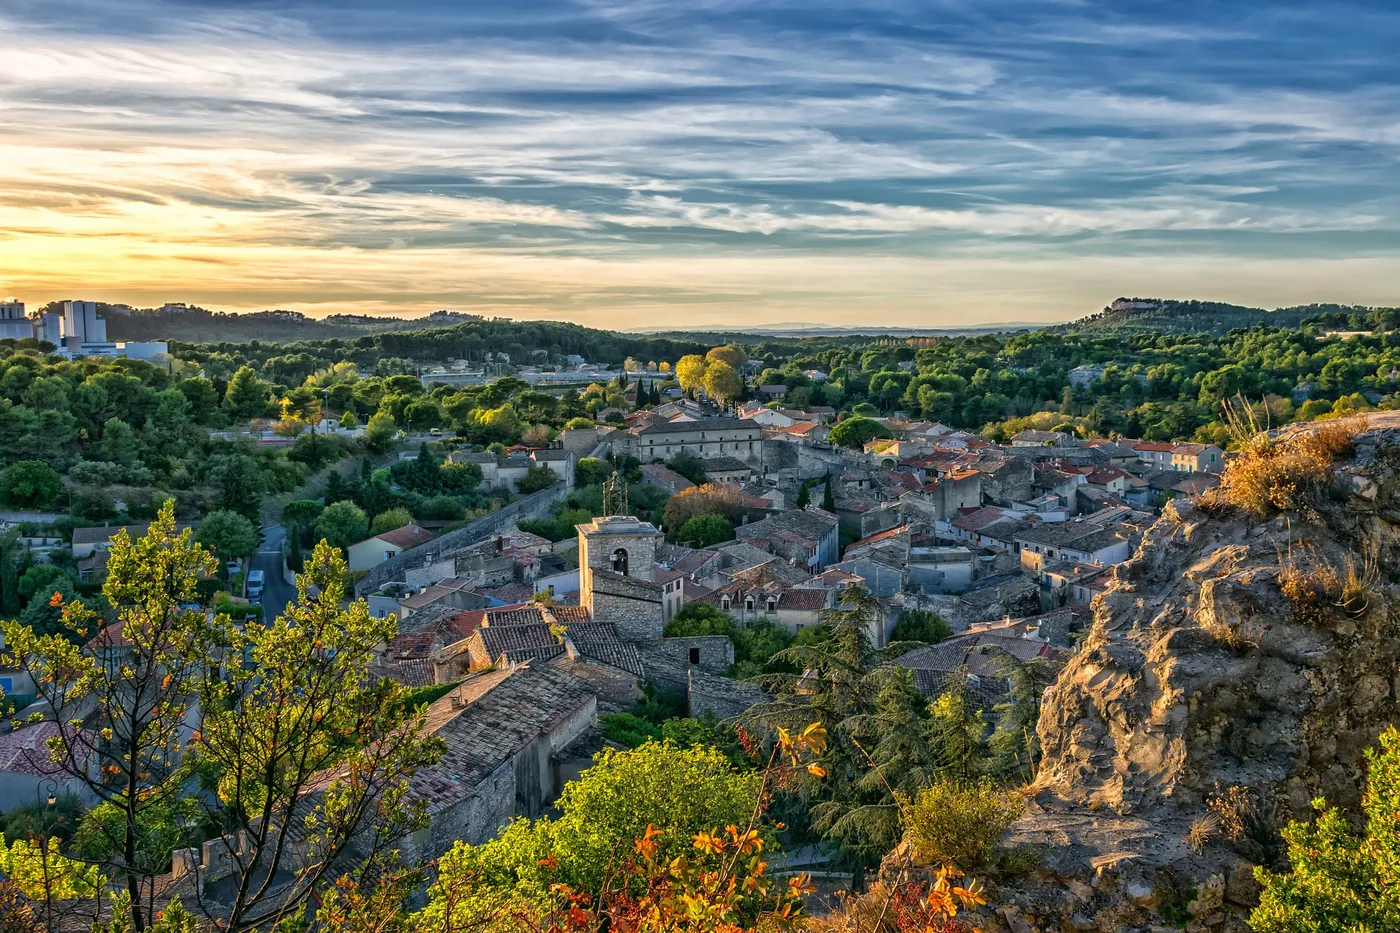 Image de couverture illustrant la destination Provence-Alpes-Côte d'Azur